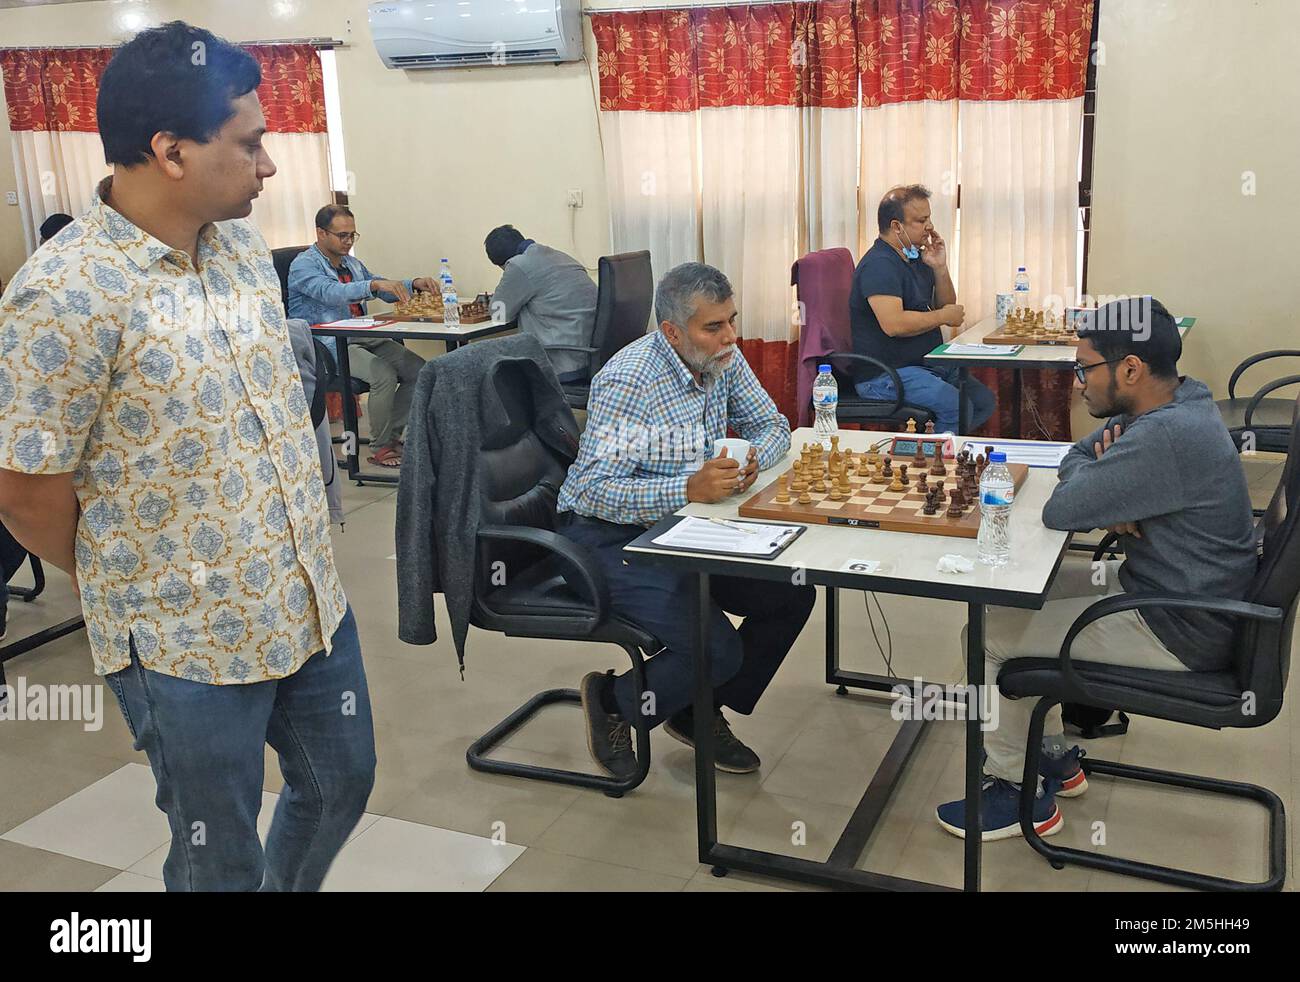 Pavlodar Chess: Bangladeshi IM Fahad Rahman finishes 14th